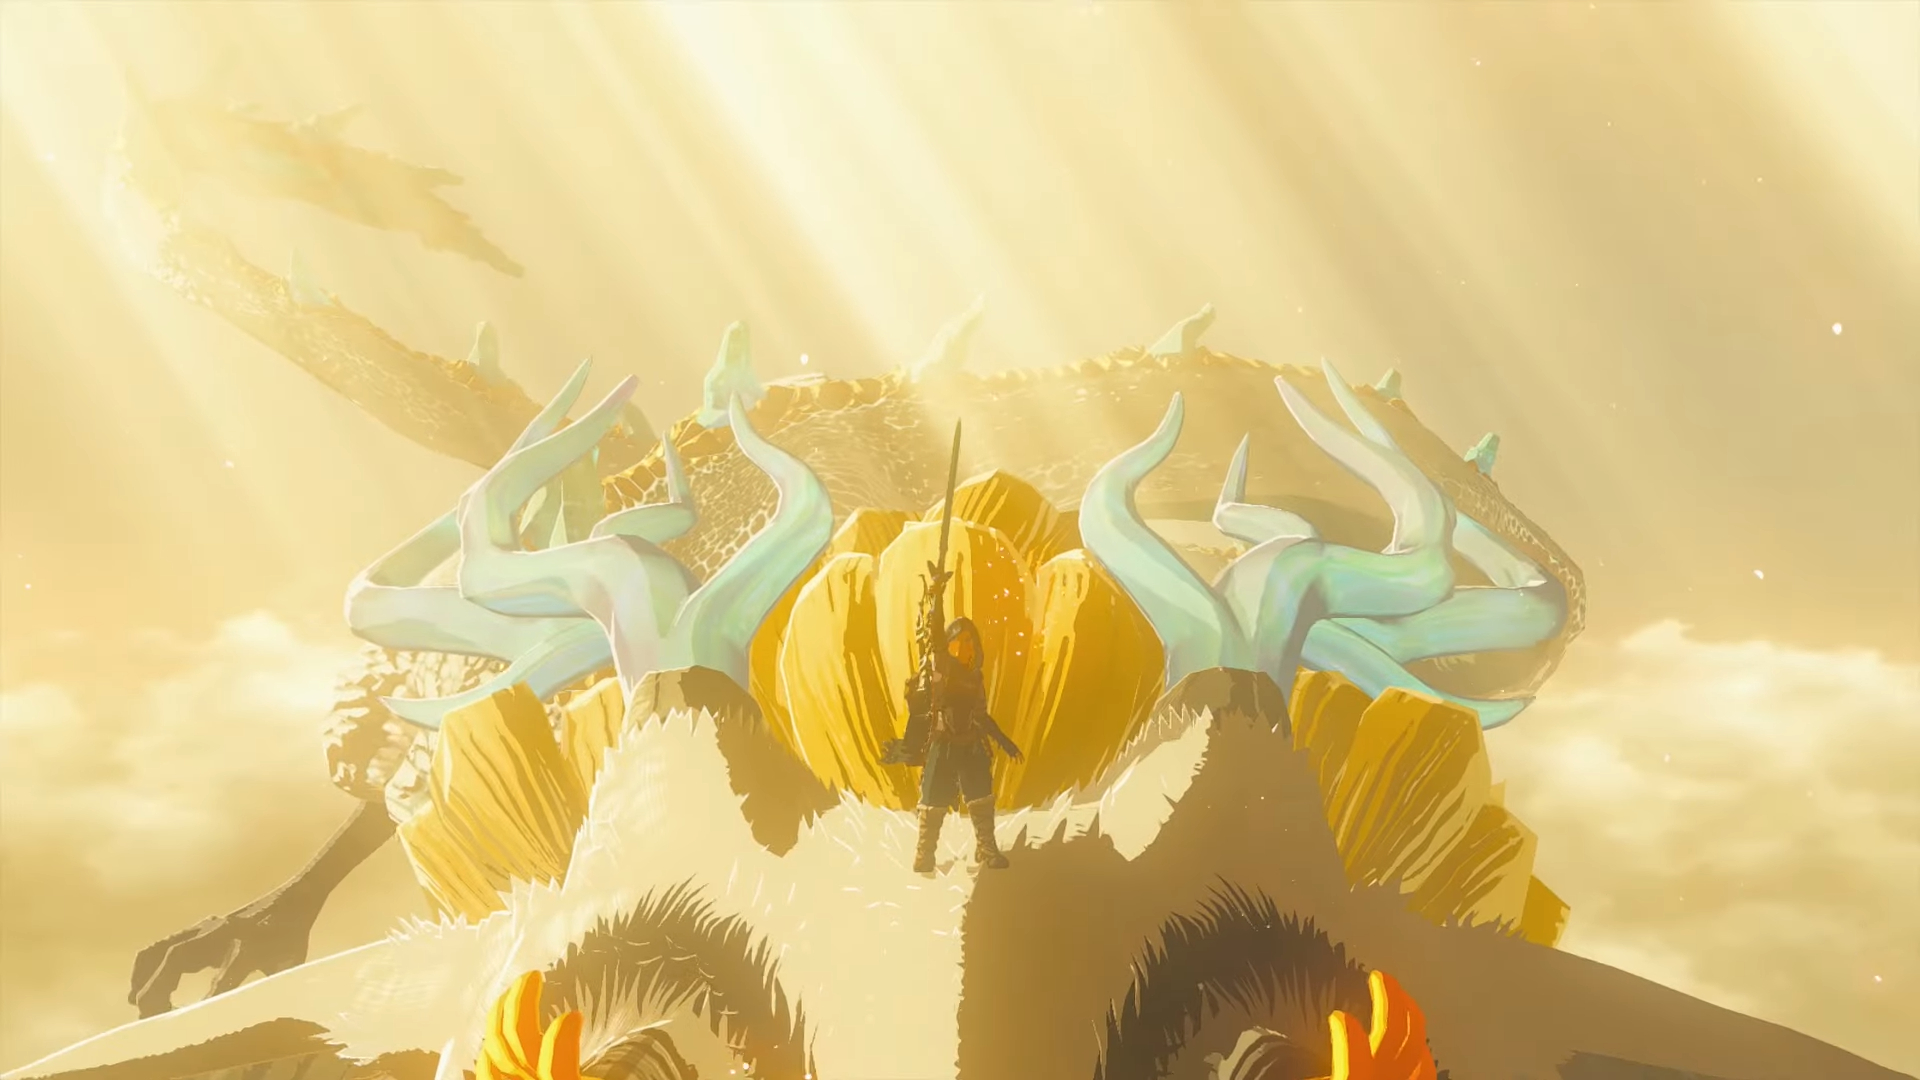 Link segura a espada mestra em cima de um dragão.